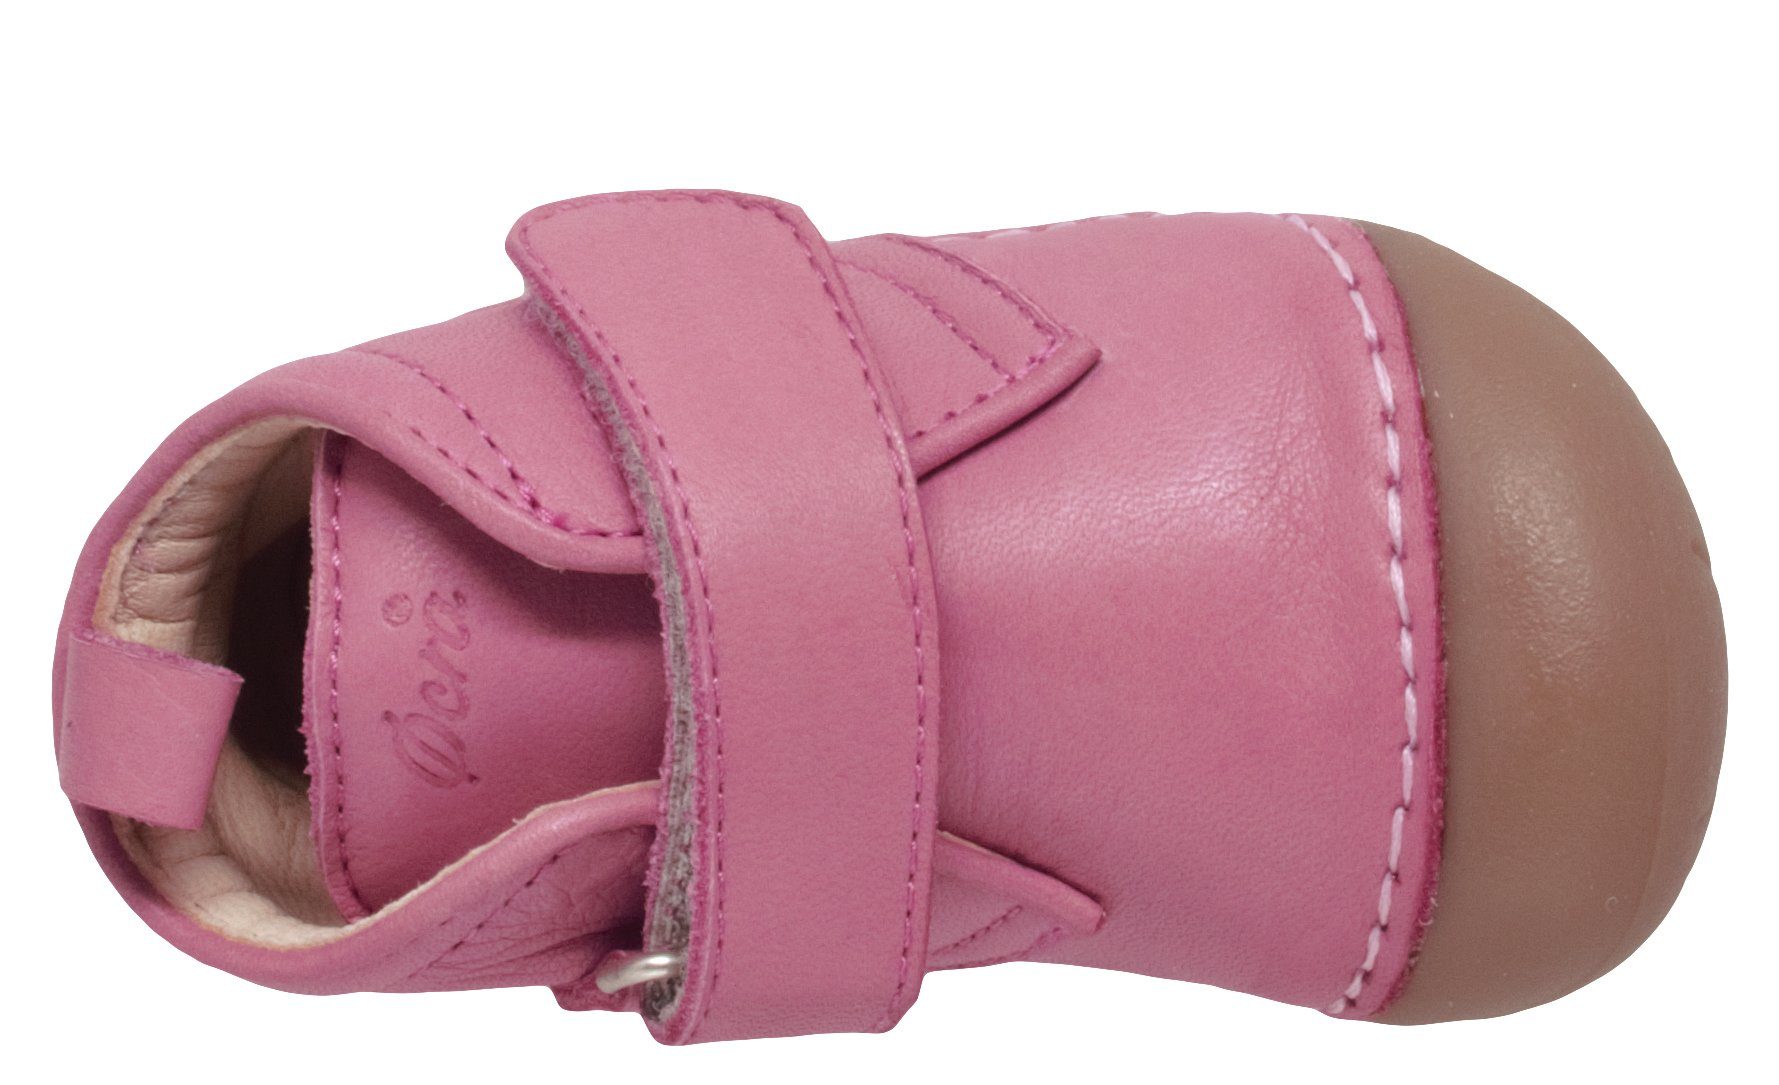 Ocra Ocra 331 Baby Krabbelschuh Pink Leder Klett Lauflernschuhe Mädchen